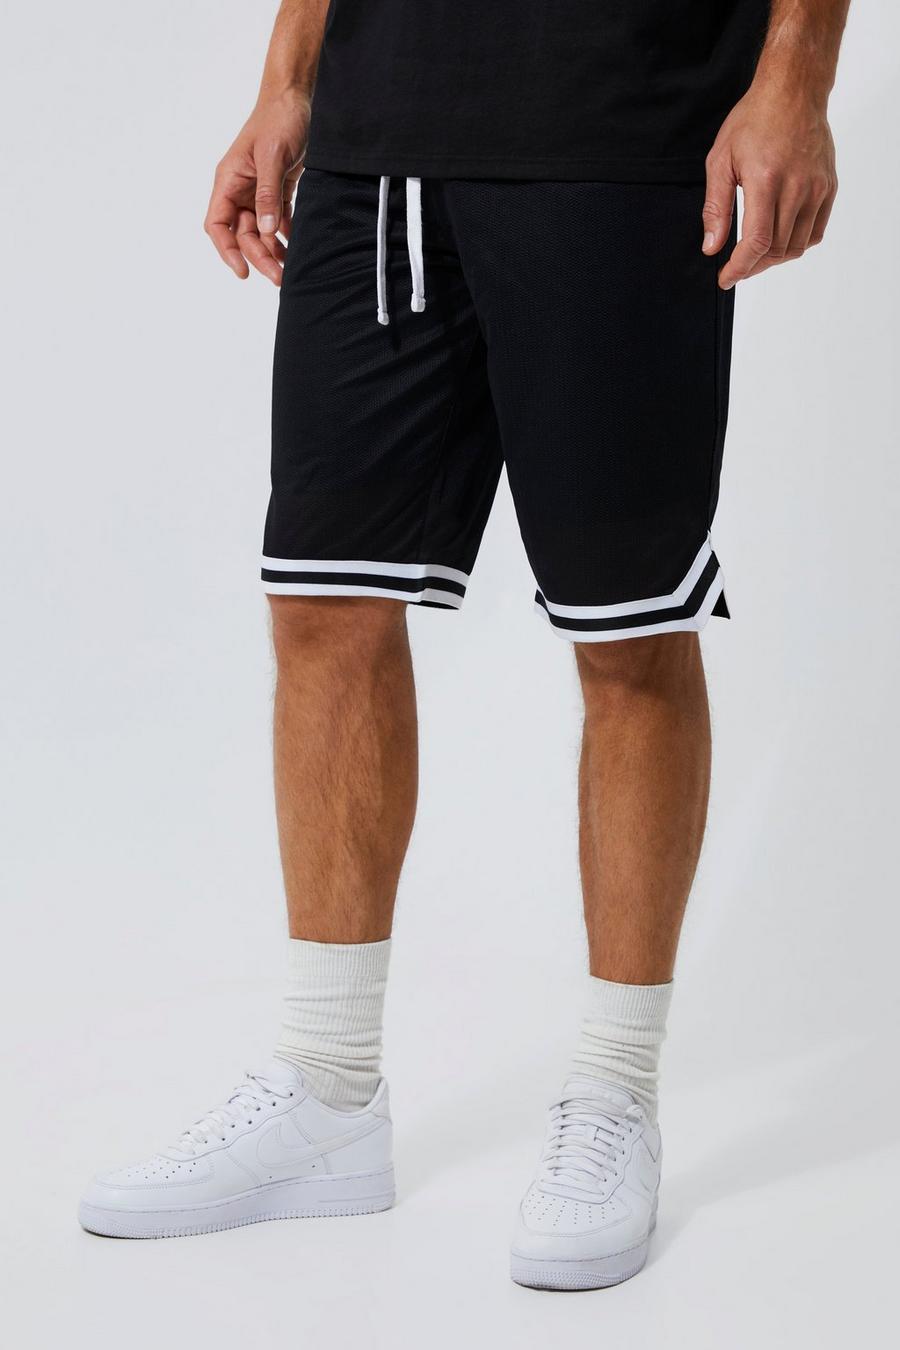 https://media.boohoo.com/i/boohoo/mzz05900_black_xl/male-black-tall-mesh-basketball-shorts-with-tape/?w=900&qlt=default&fmt.jp2.qlt=70&fmt=auto&sm=fit